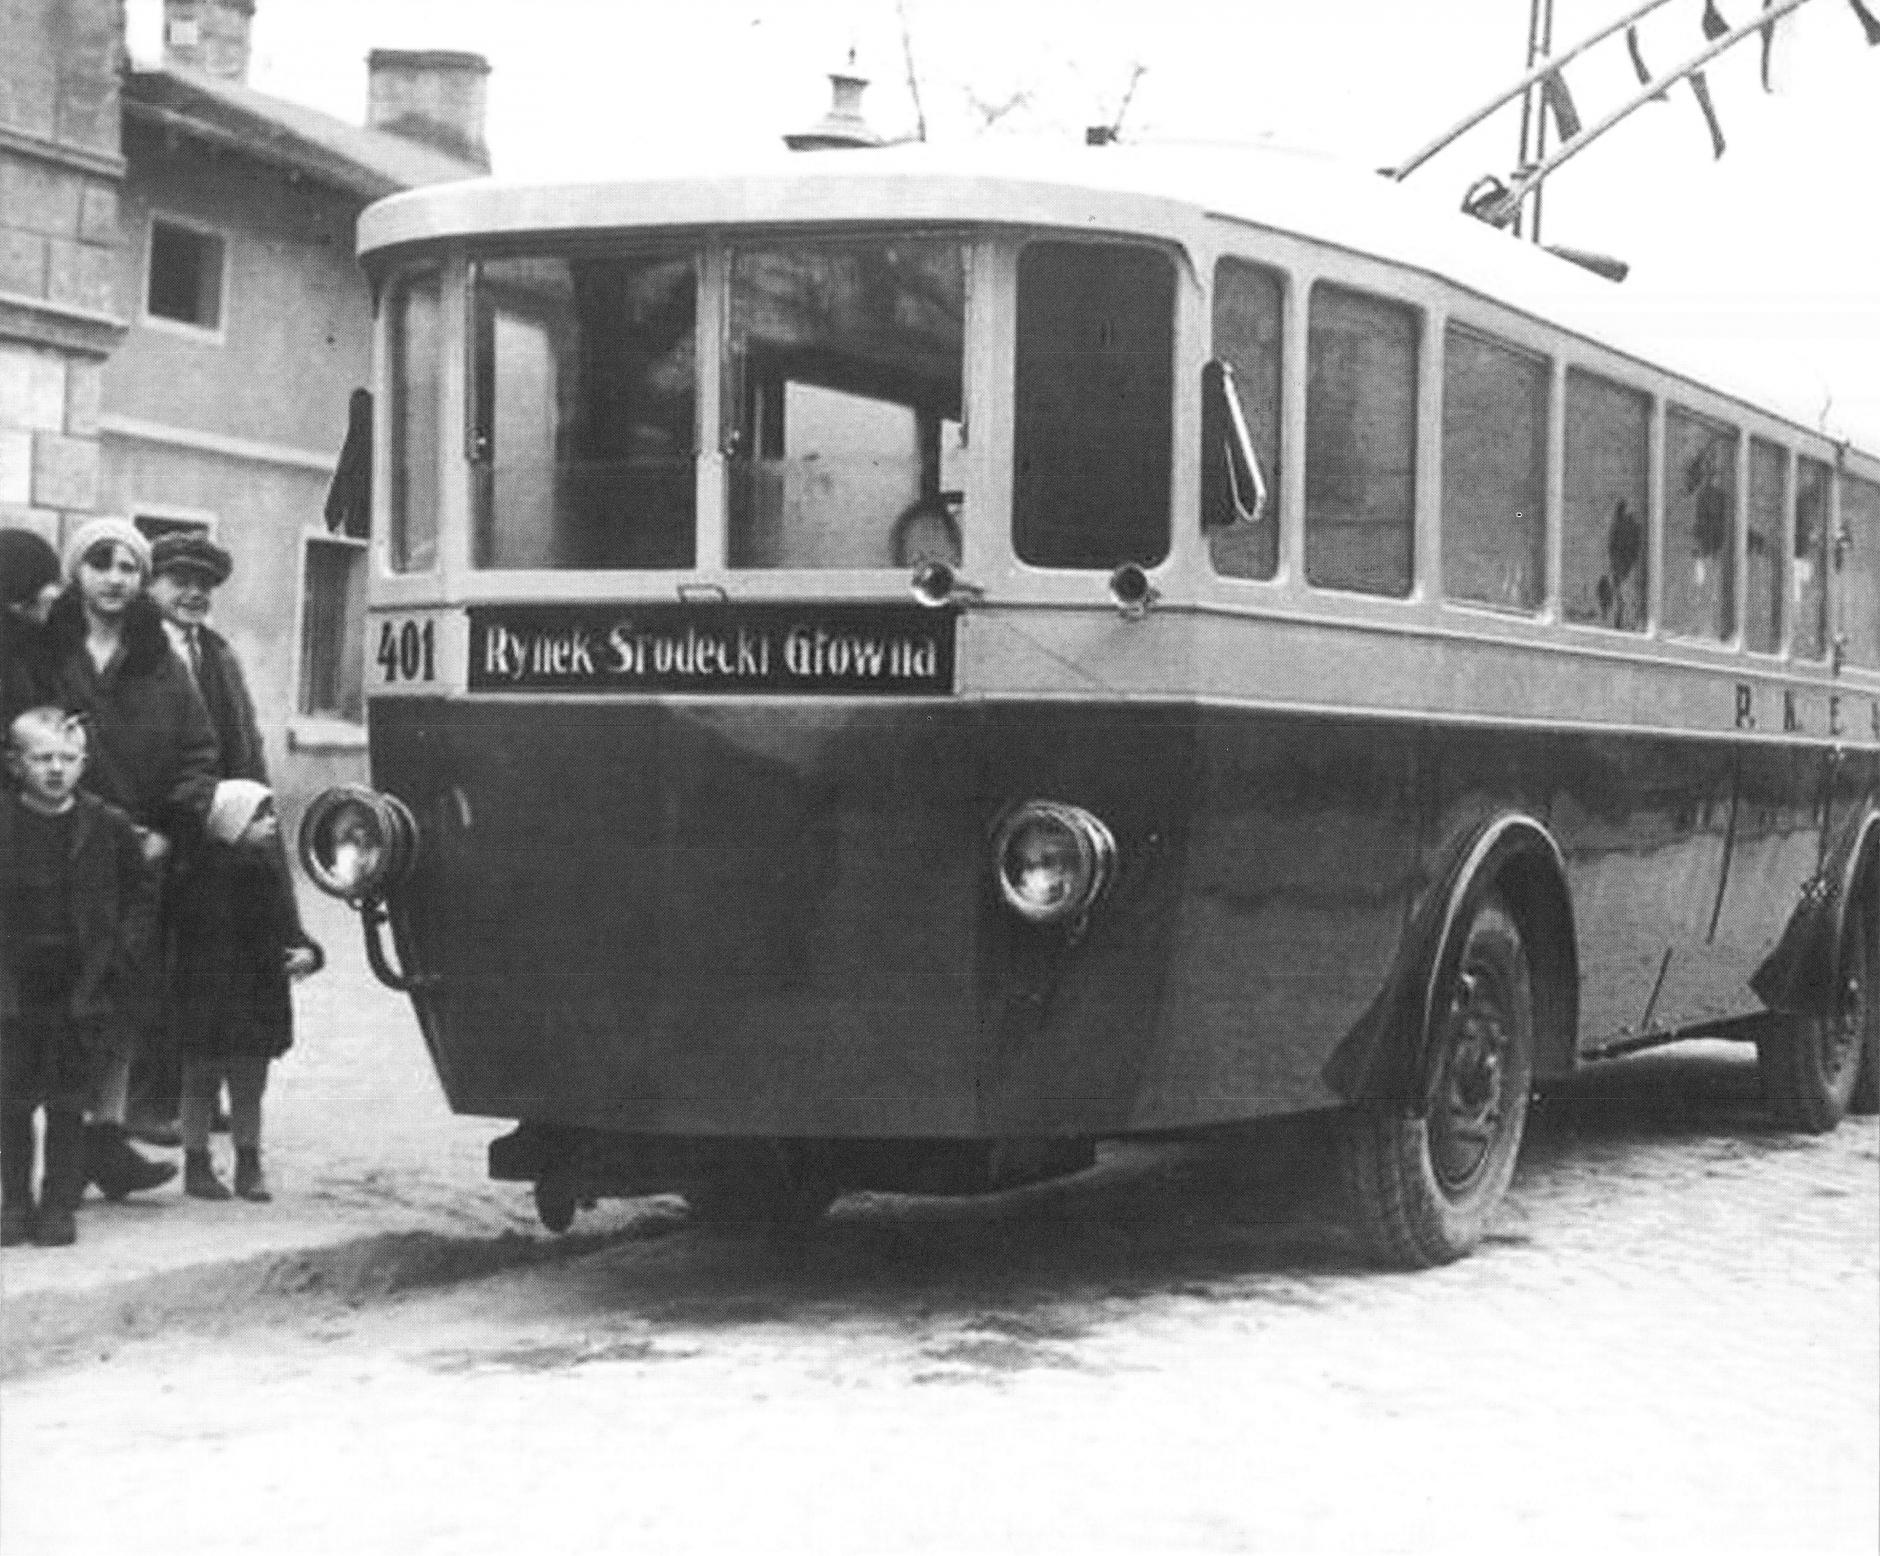 (1930-1939) Linia trolejbusowa na trasie Rynek Śródecki - Główna, otwarta 15 lutego 1930 r.